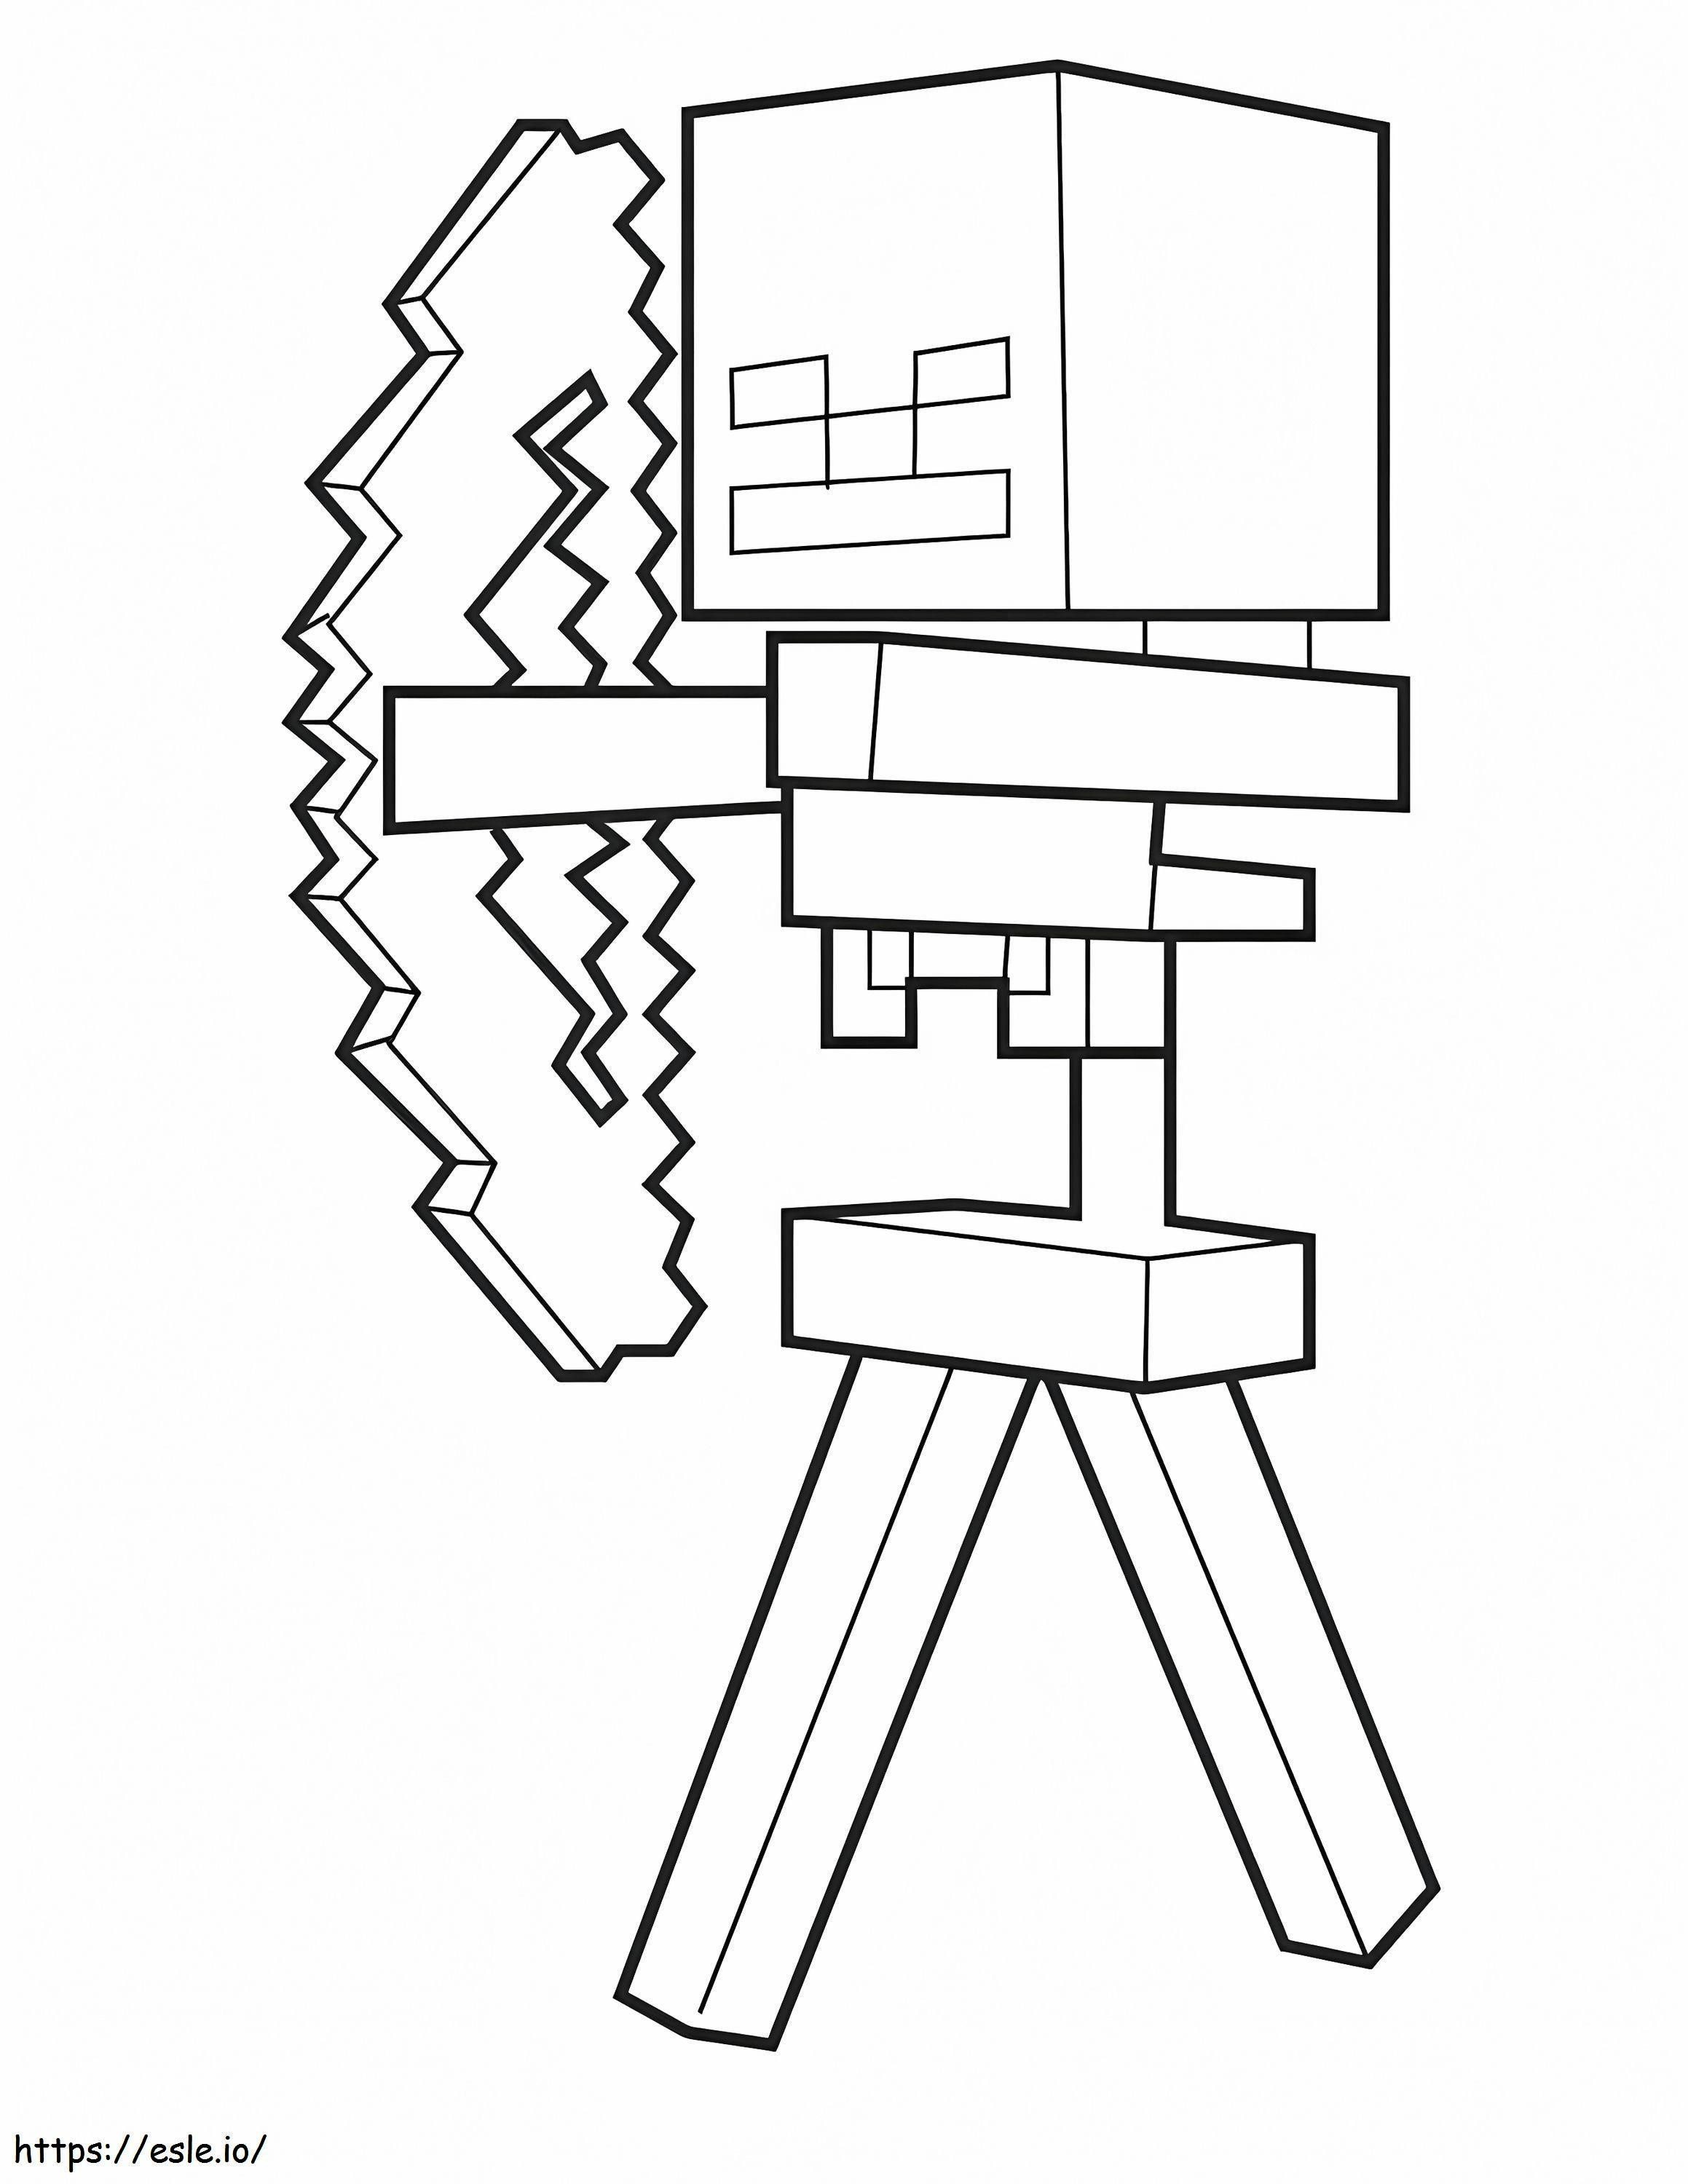 Esqueleto y flecha del juego Minecraft para colorear